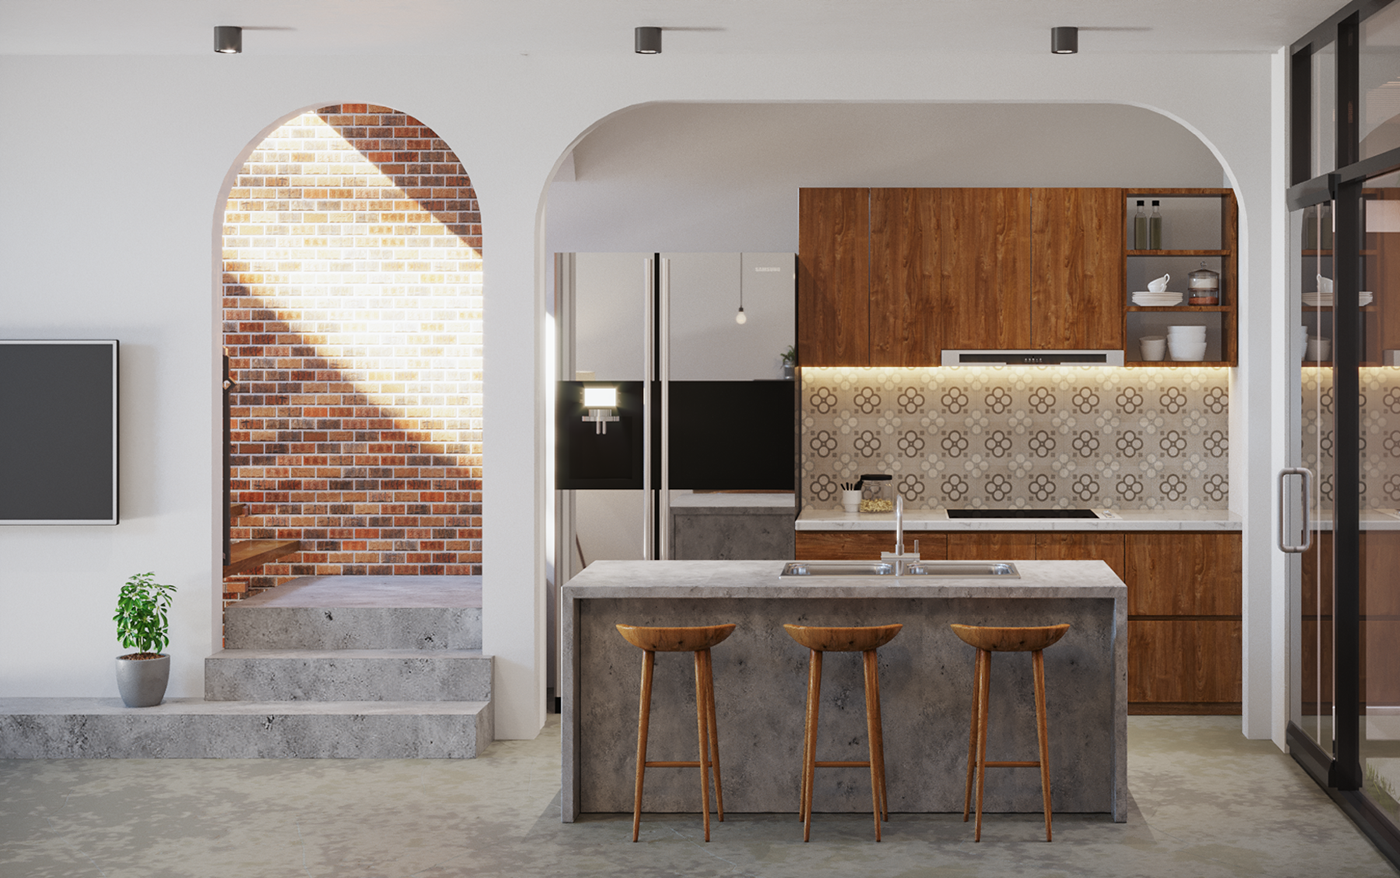 Hình ảnh phòng bếp với tủ gỗ, tường ốp gạch bông, bar nhỏ xinh, cạnh đó là cầu thang lên tầng trên, kệ tivi